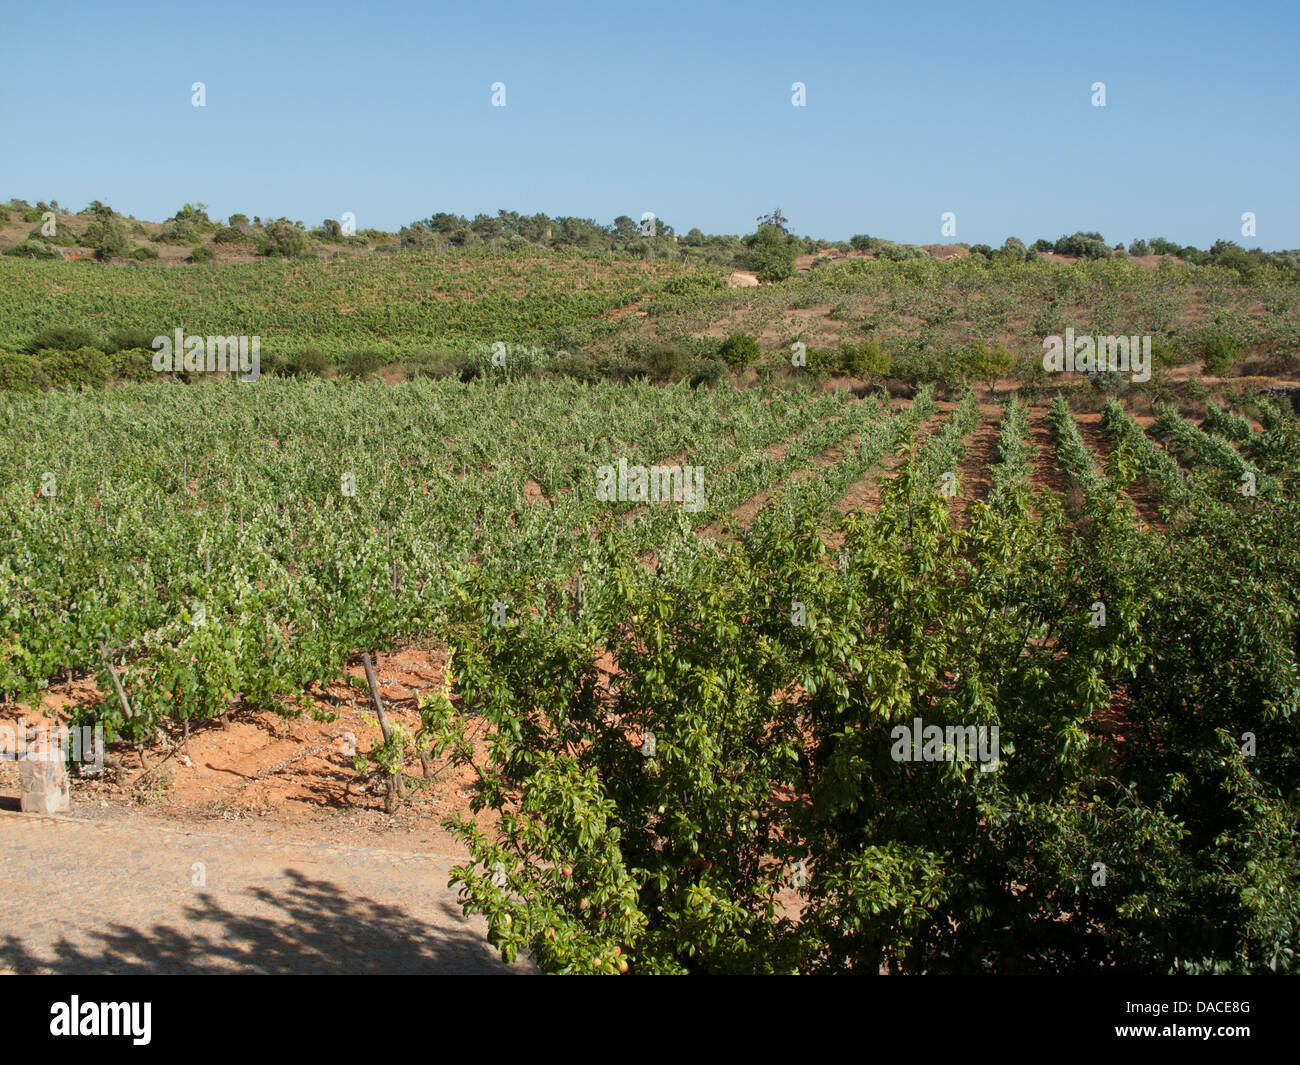 Vineyard of Quinta dos Vales in the Algarve, Portugal Stock Photo